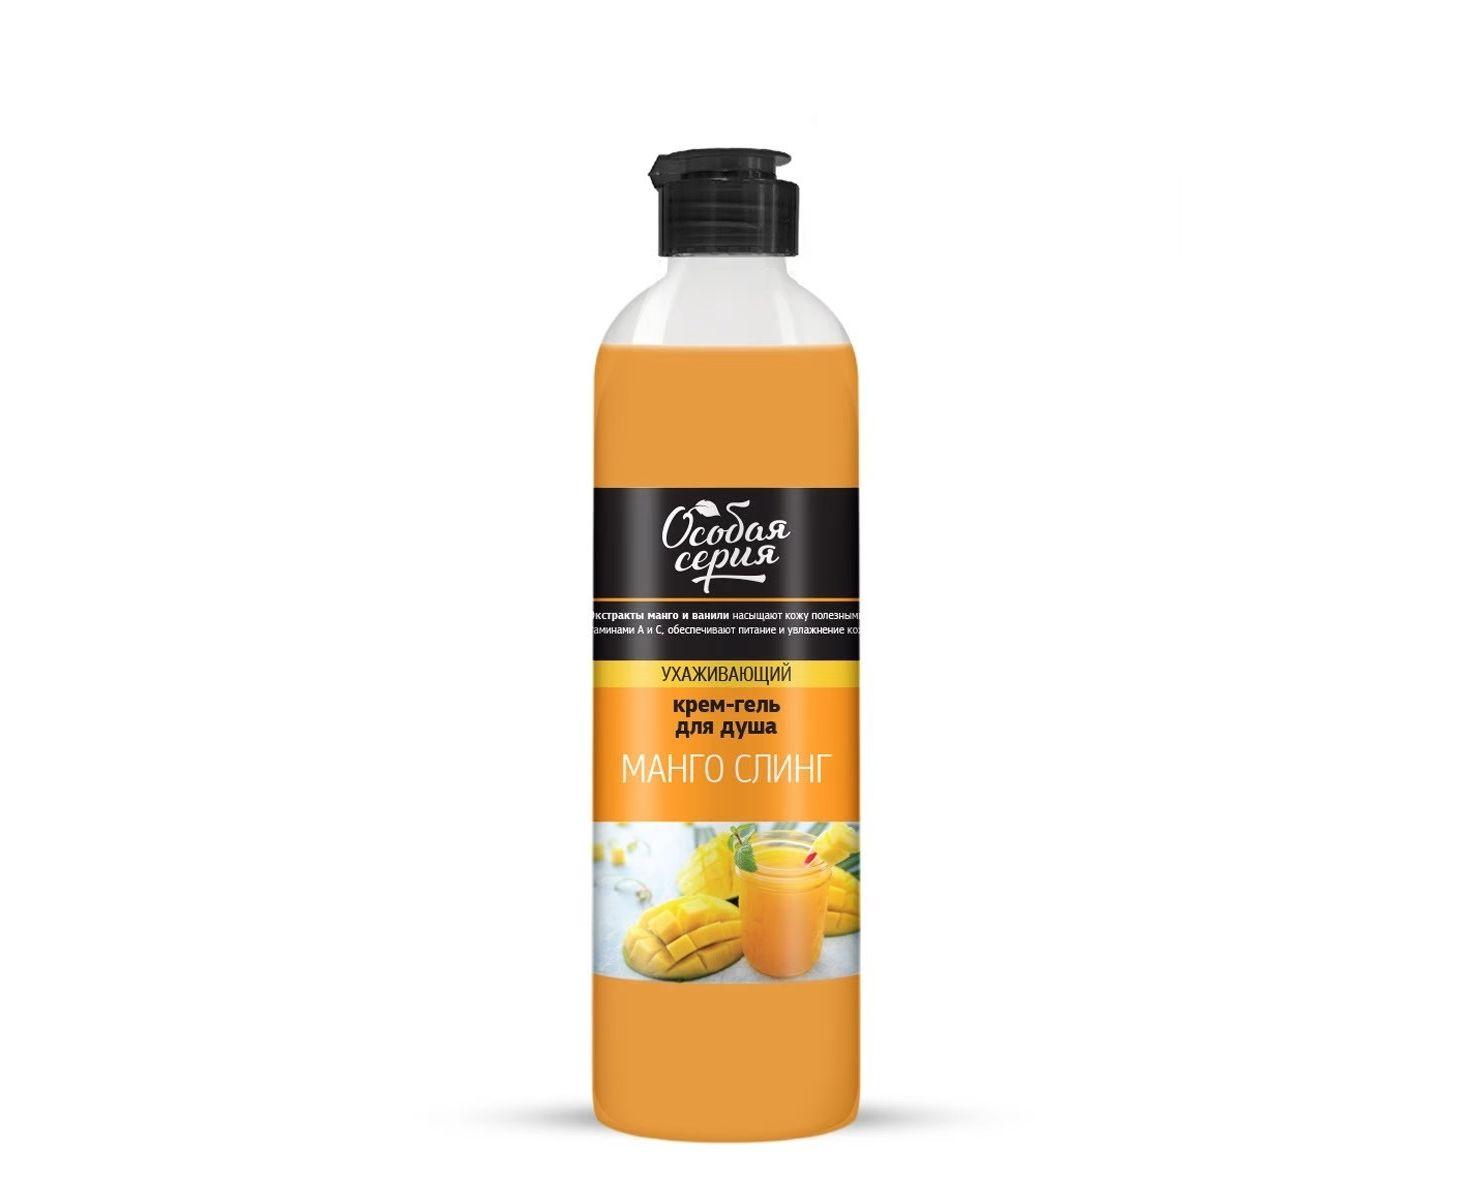 Крем-гель для душа Особая серия ухаживающий манго слинг для всех типов кожи 500 мл., ПЭТ